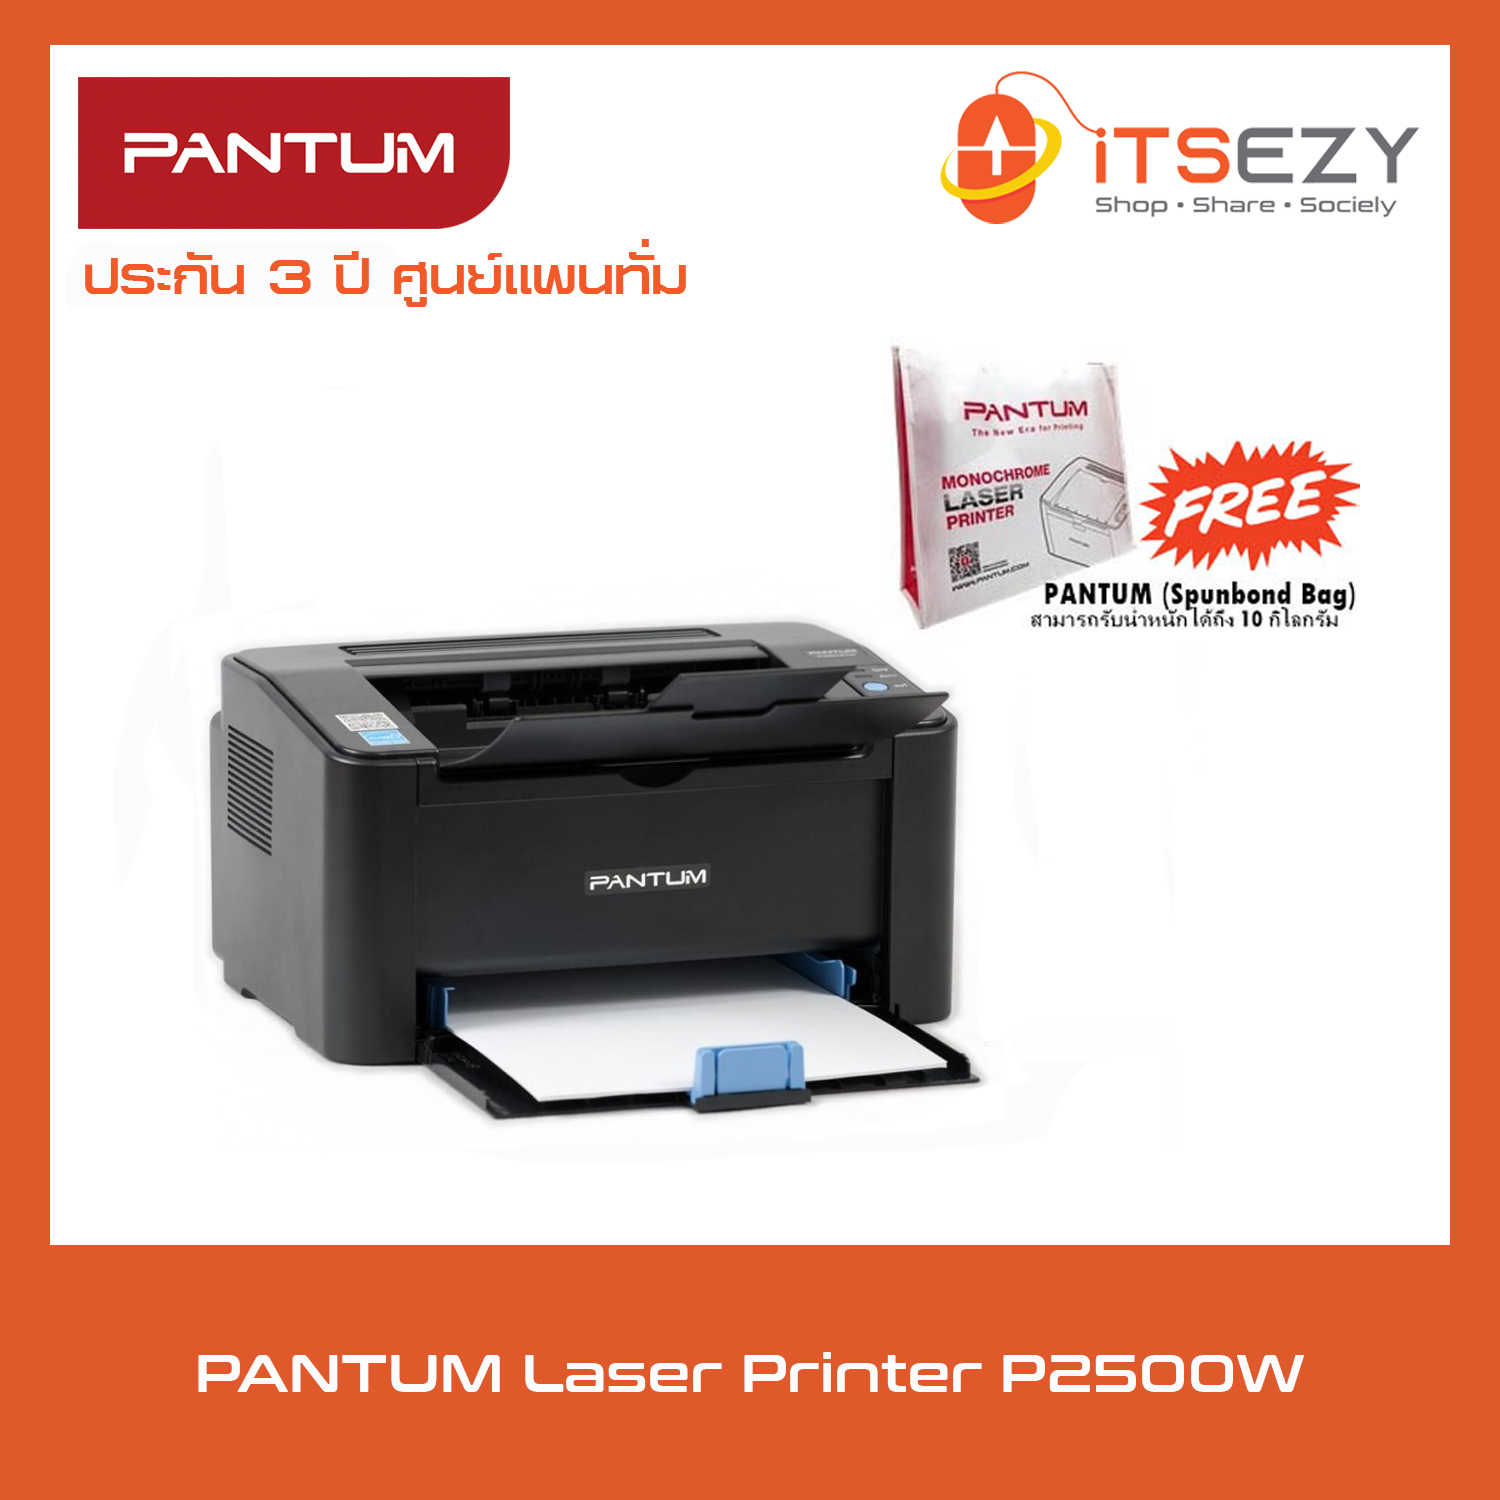 PANTUM P2500W เครื่องพิมพ์เลเซอร์ ขาว-ดำ รับประกัน 3 ปี ฟรี PANTUM Spunbond Bag รับน้ำหนักได้ถึง 10 กิโลกรัม!!! [ICT ข้อ 41 งบประมาณ 3,300 บาท]